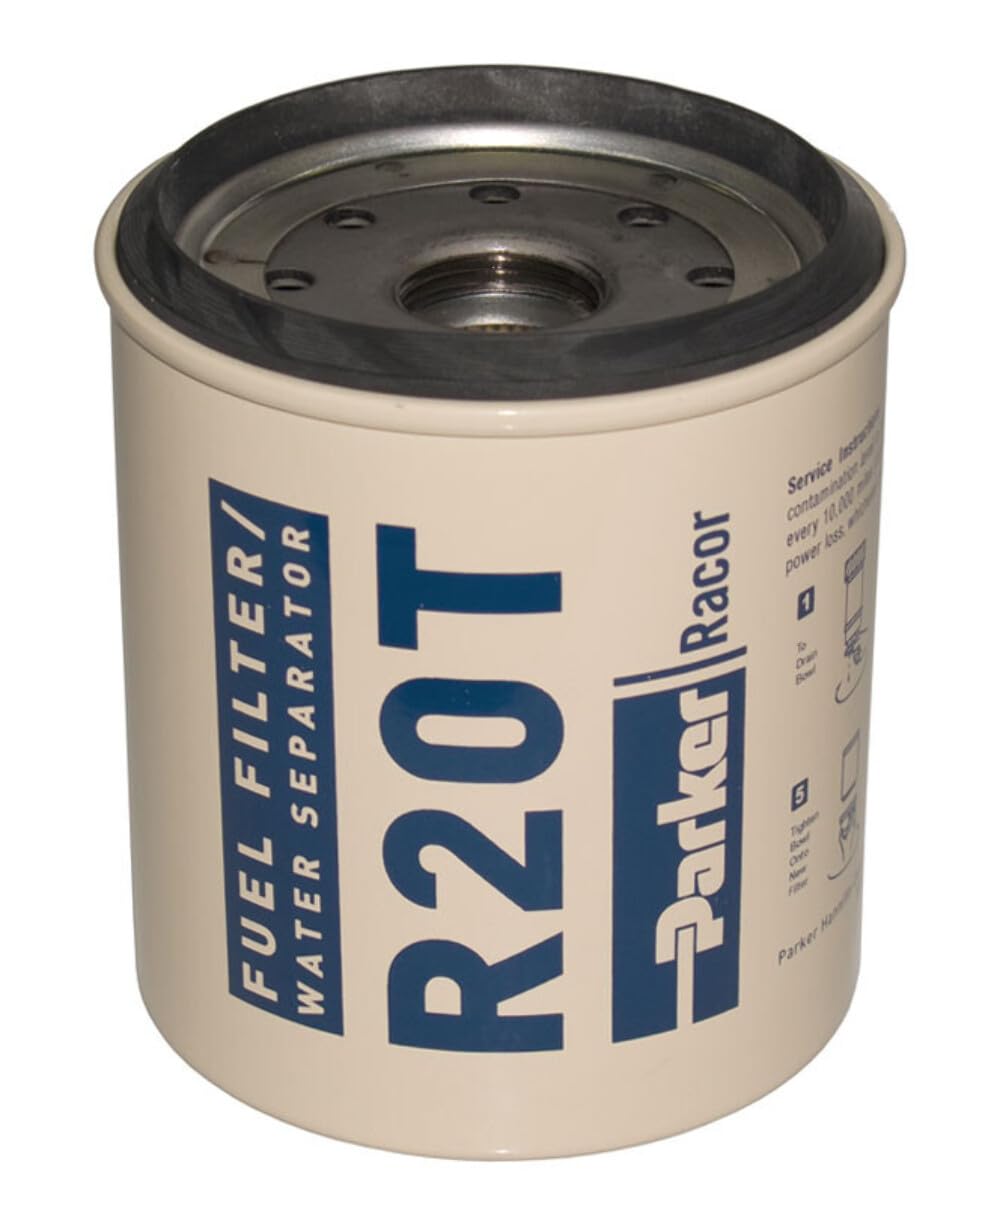 Racor 62-r20t spin-on Patrone Ersatz, Blau, 10 Micron von Racor